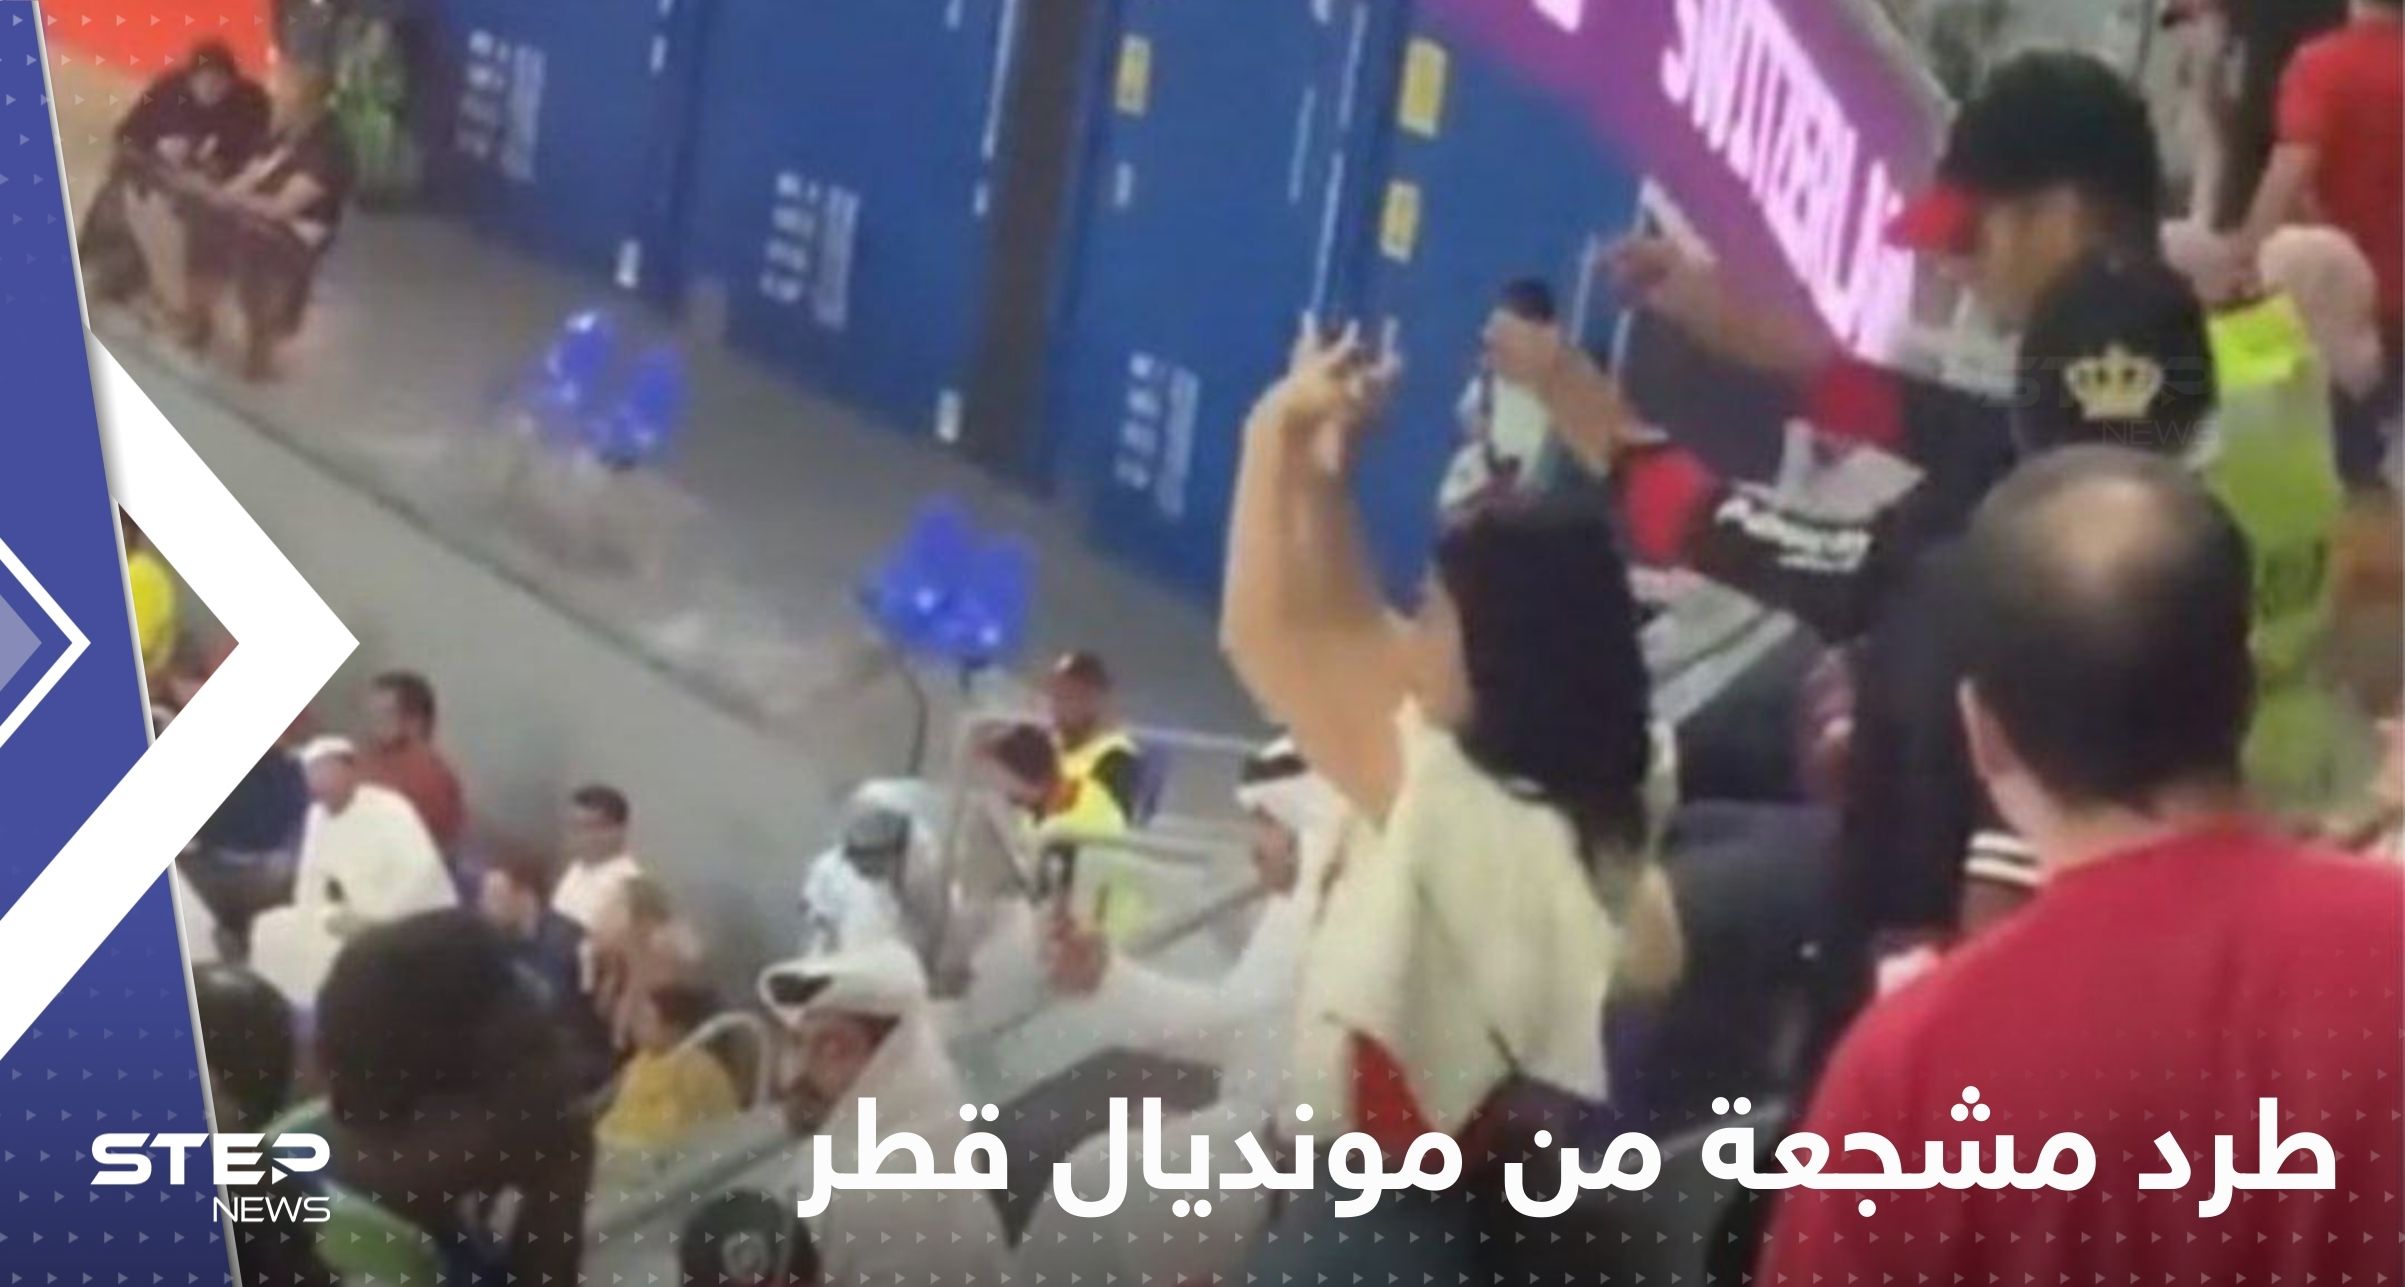 بالفيديو|| طرد مشجعة من مونديال قطر بمباراة صربيا وسويسرا قامت بحركة أثارت الغضب